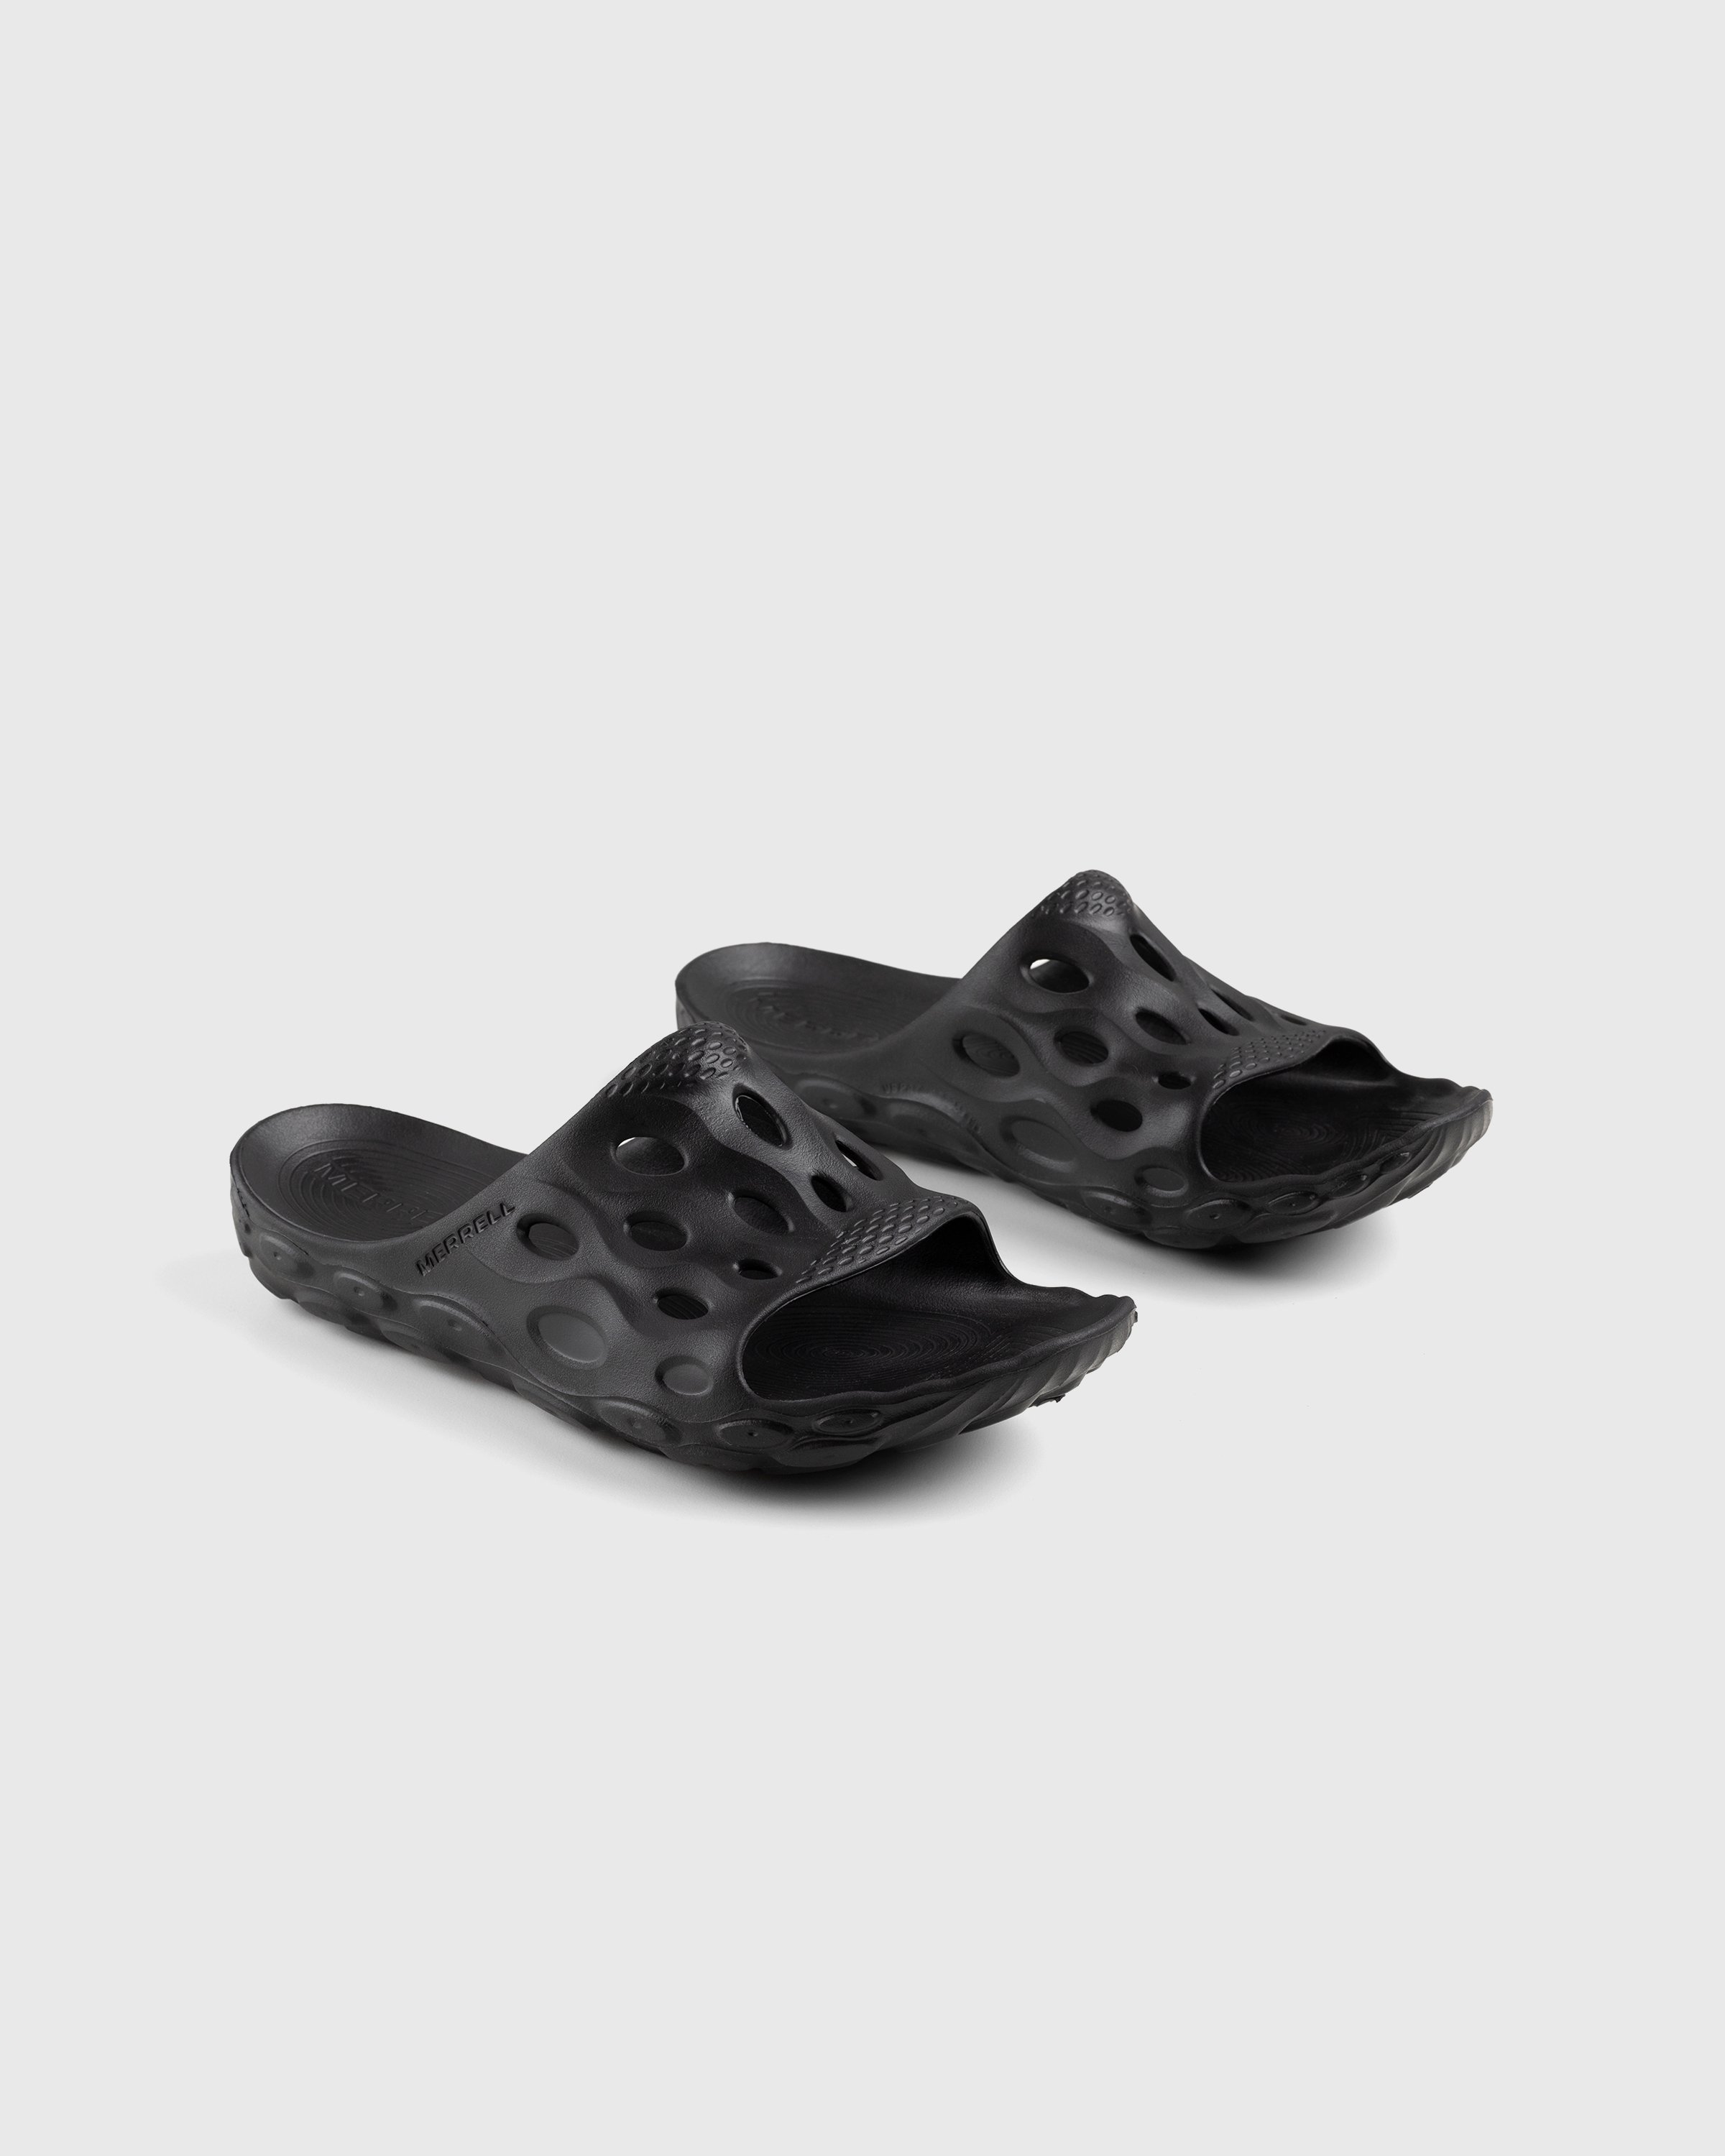 Merrell - Hydro Slide Black/Grey - Footwear - Black - Image 3